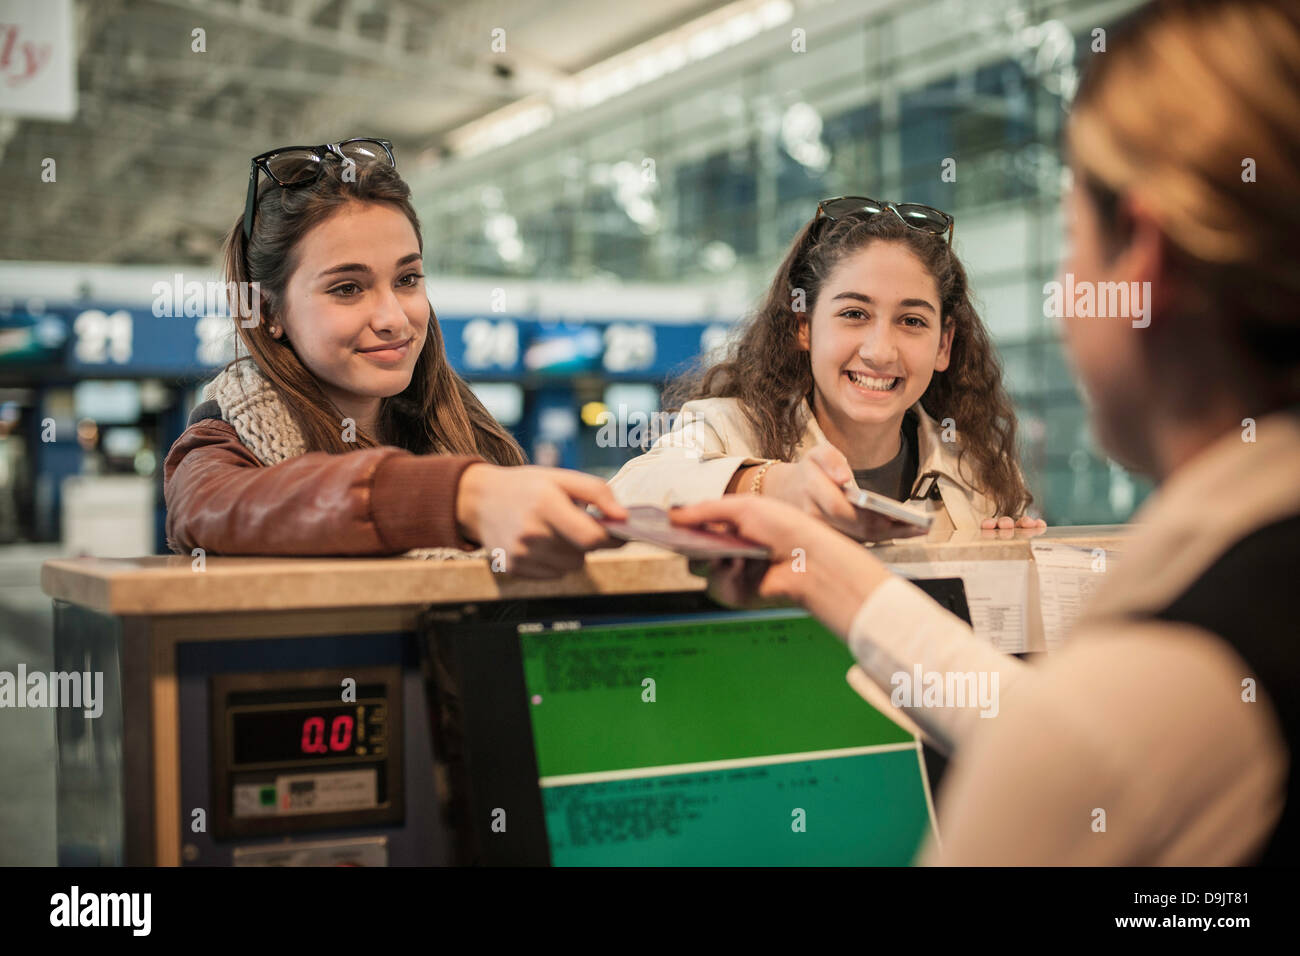 Zwei Mädchen im Teenageralter am Flughafen check-in Bereich Stockfoto